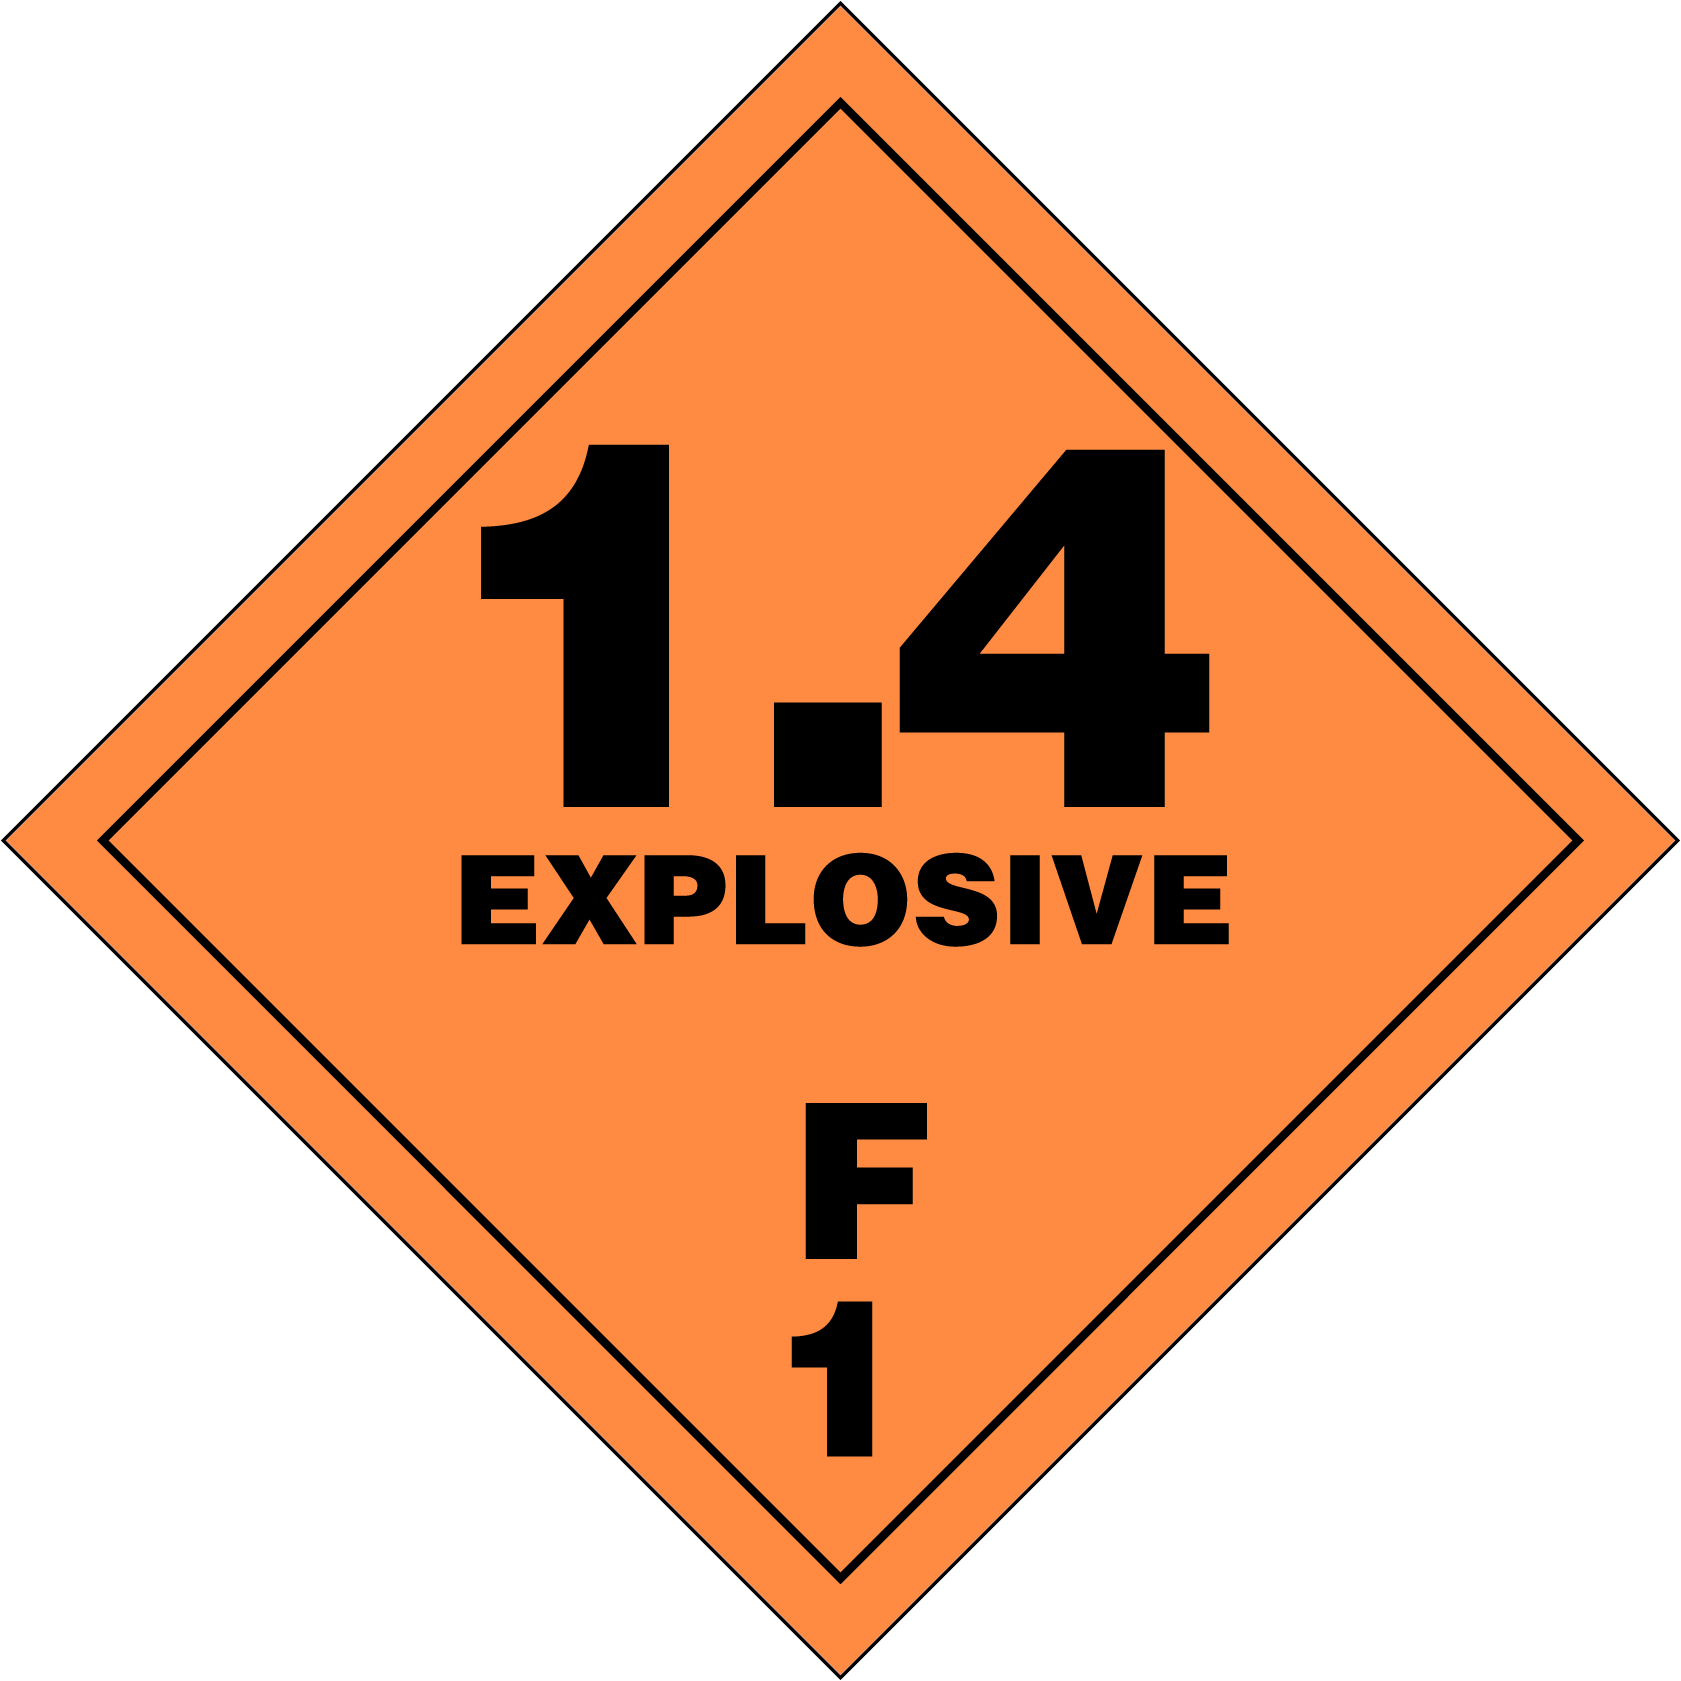 Explosives (1.4F)